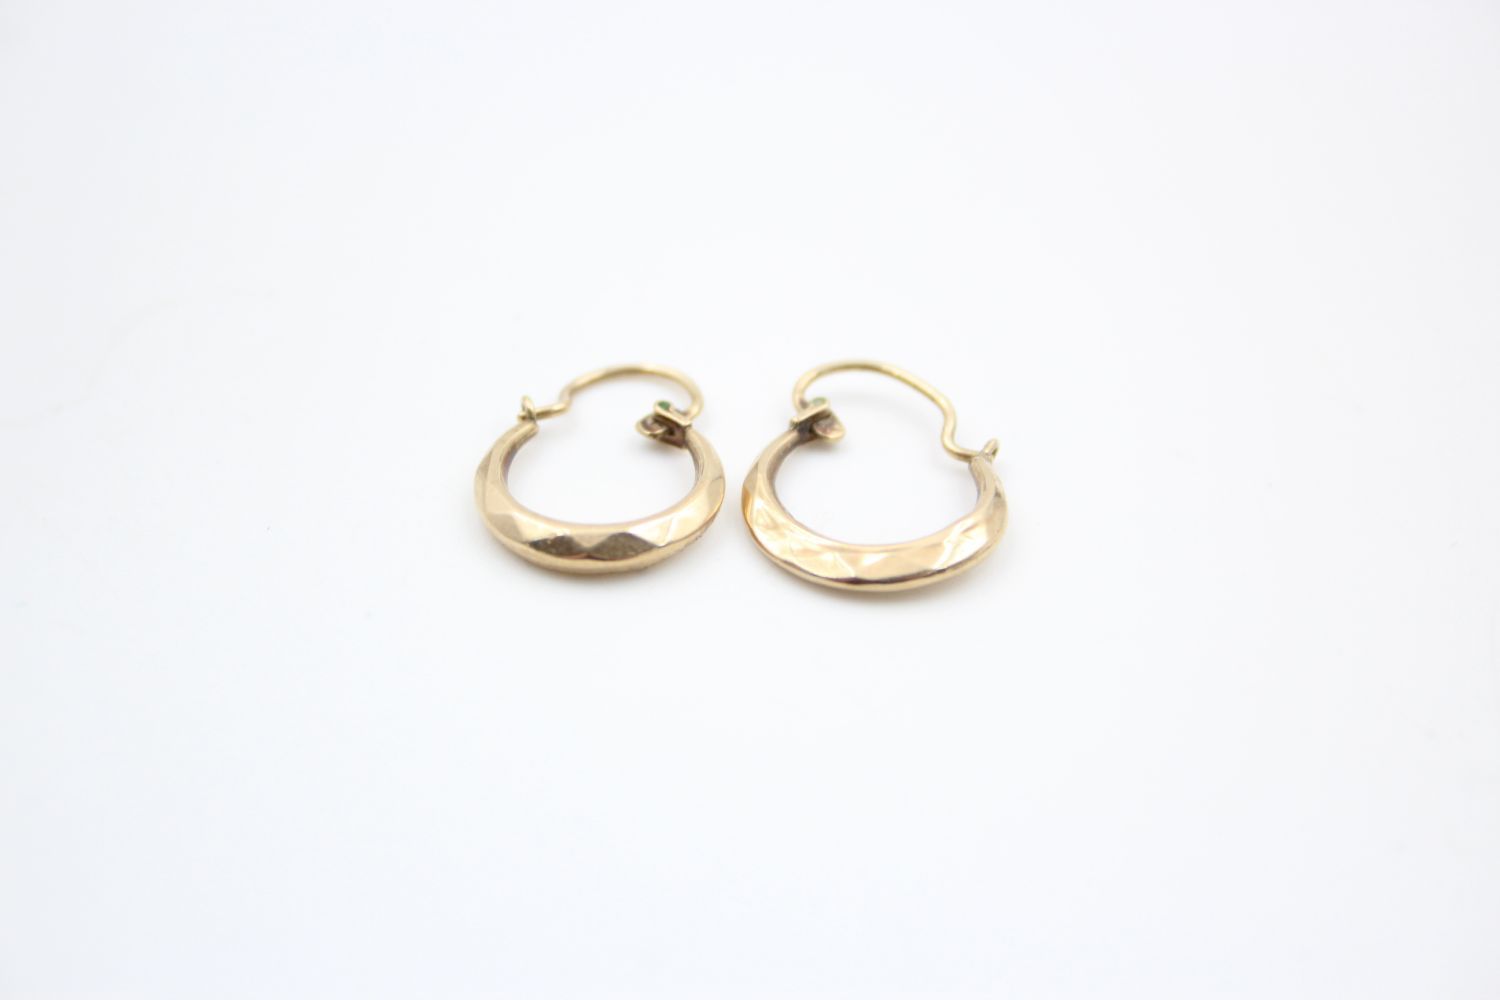 2 x 9ct gold hoop earrings 2.5 grams gross - Image 7 of 9